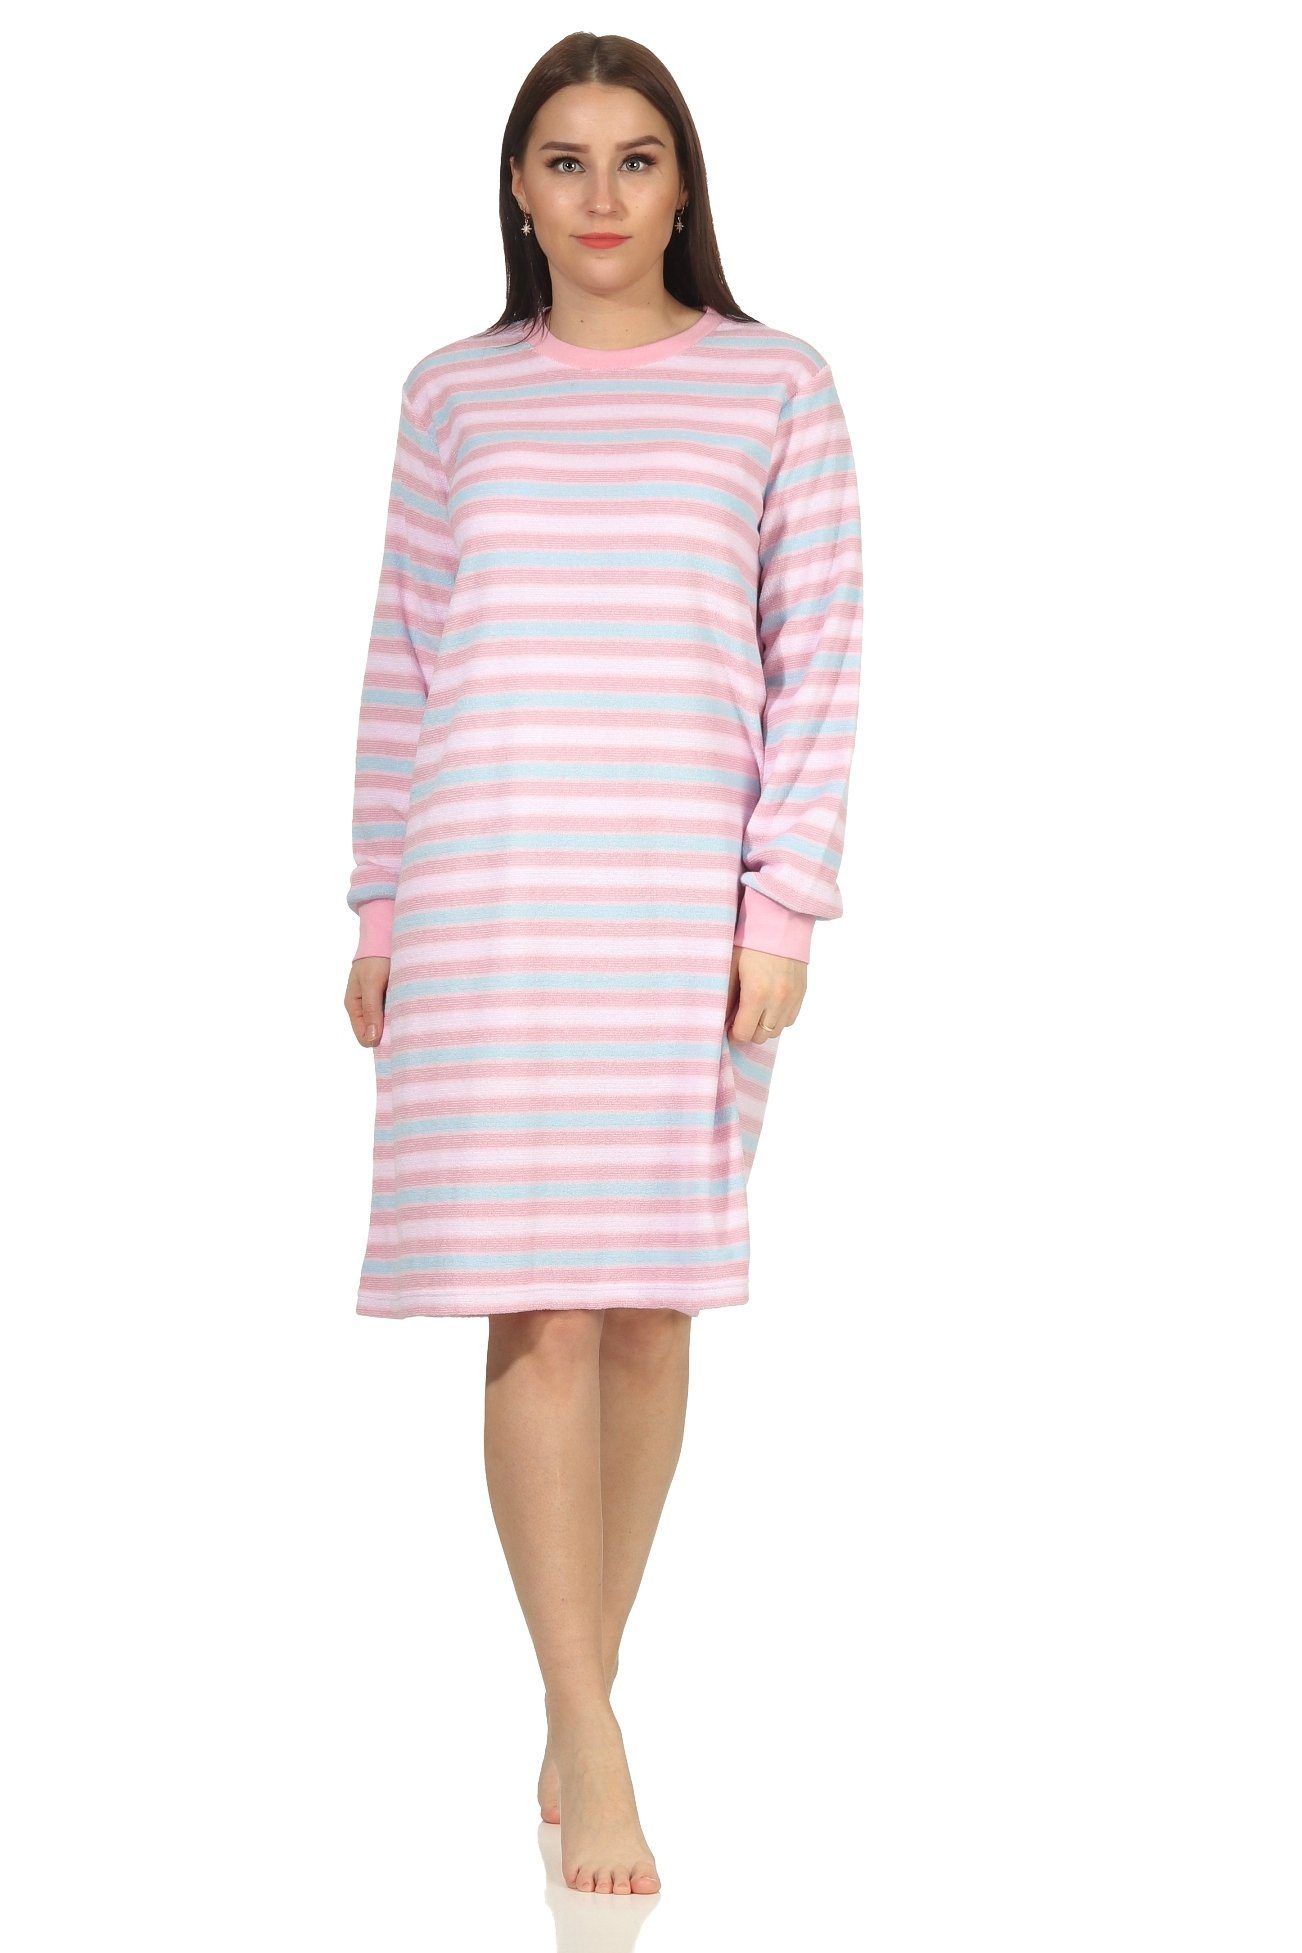 Creative by Normann Nachthemd »Damen Frottee langarm Nachthemd mit Bündchen  in Ringeloptik - auch in Übergrössen« online kaufen | OTTO